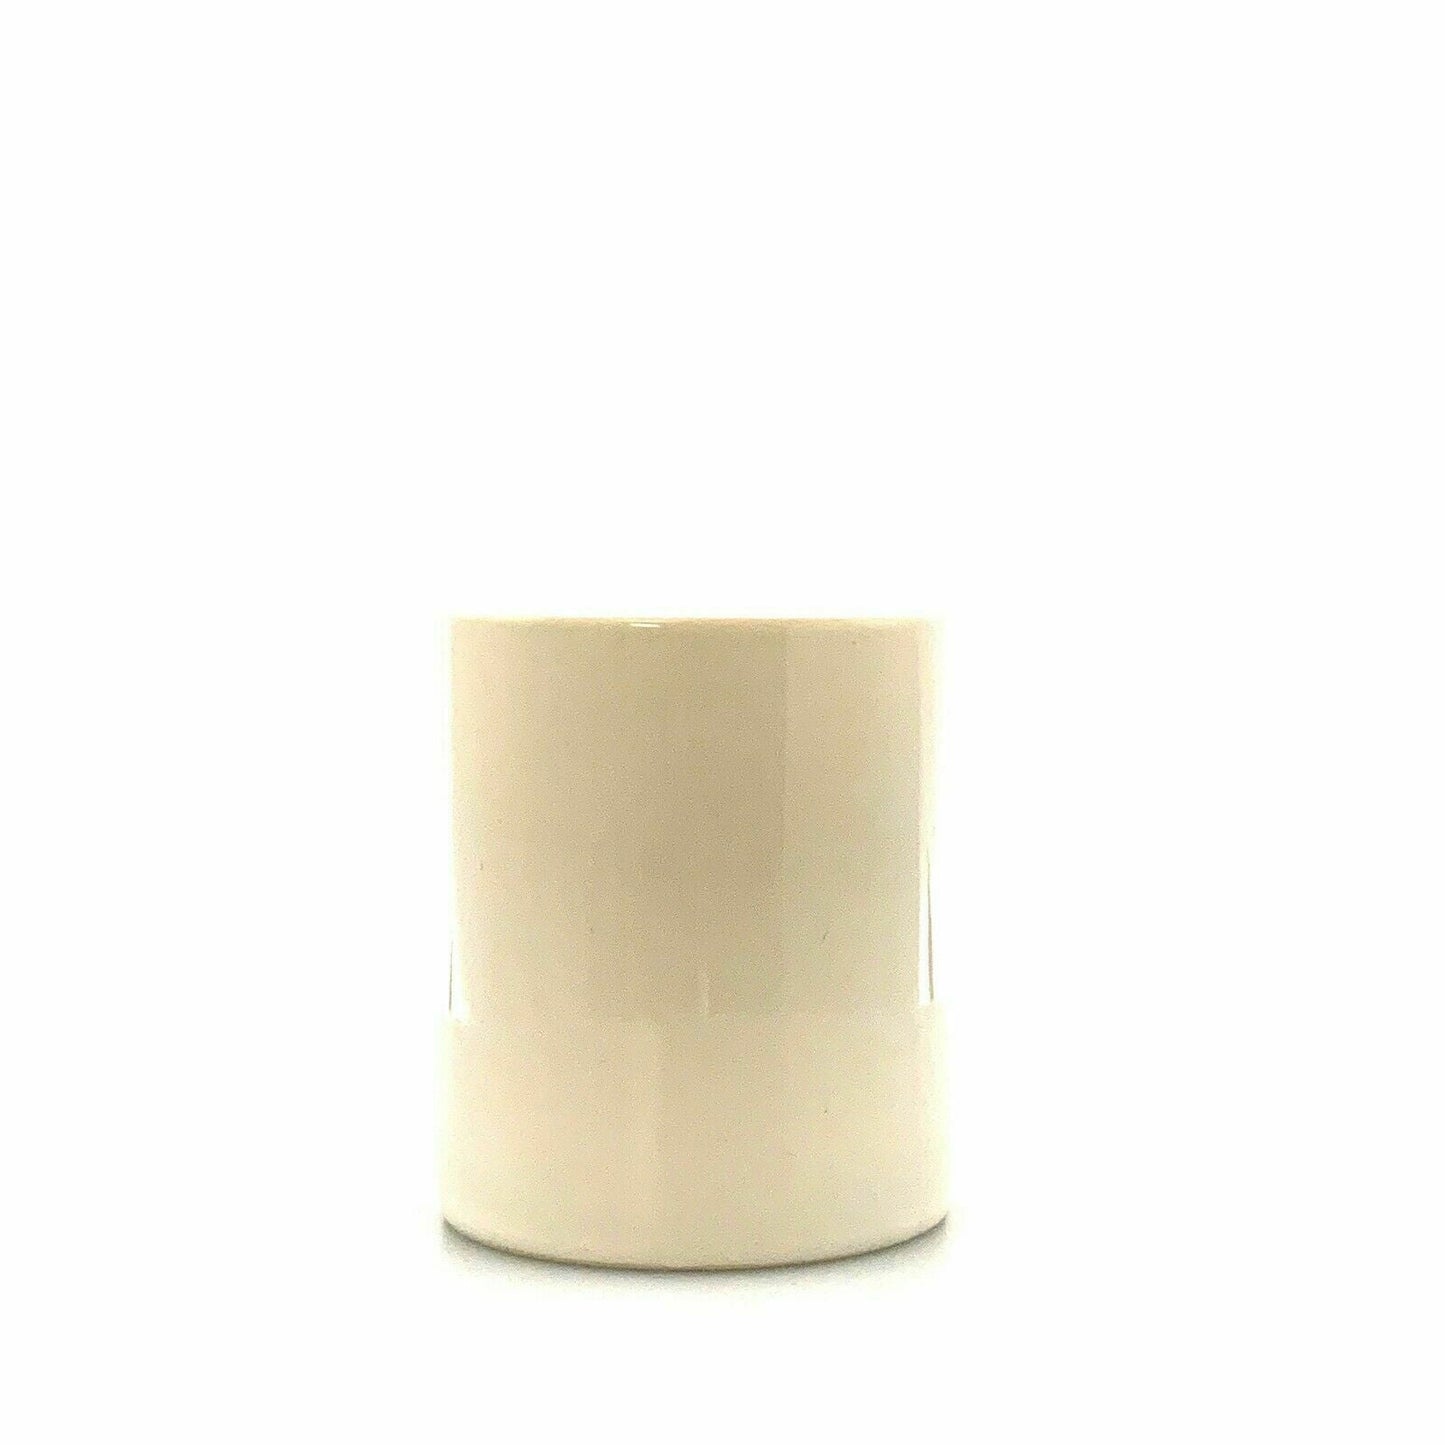 Pioneer Seed Logo Ceramic Coffee Cup Mug, White - 10 fl oz